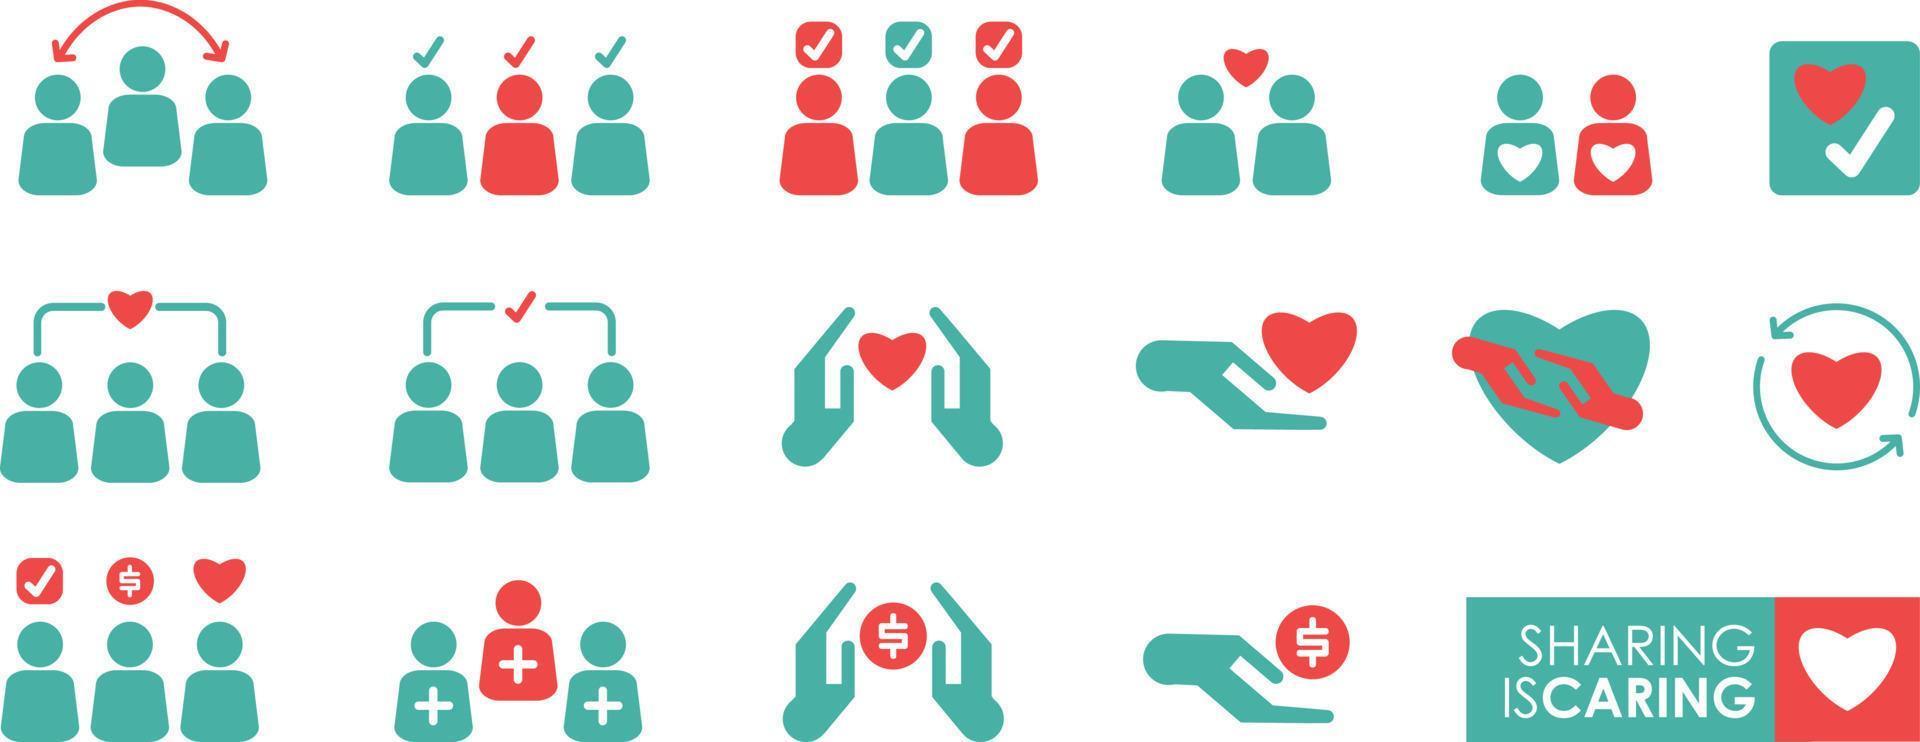 compartir es una silueta de icono cariñosa, incluye iconos como bondad, cuidado, ayuda, compartir, bueno, apoyo y más. vector